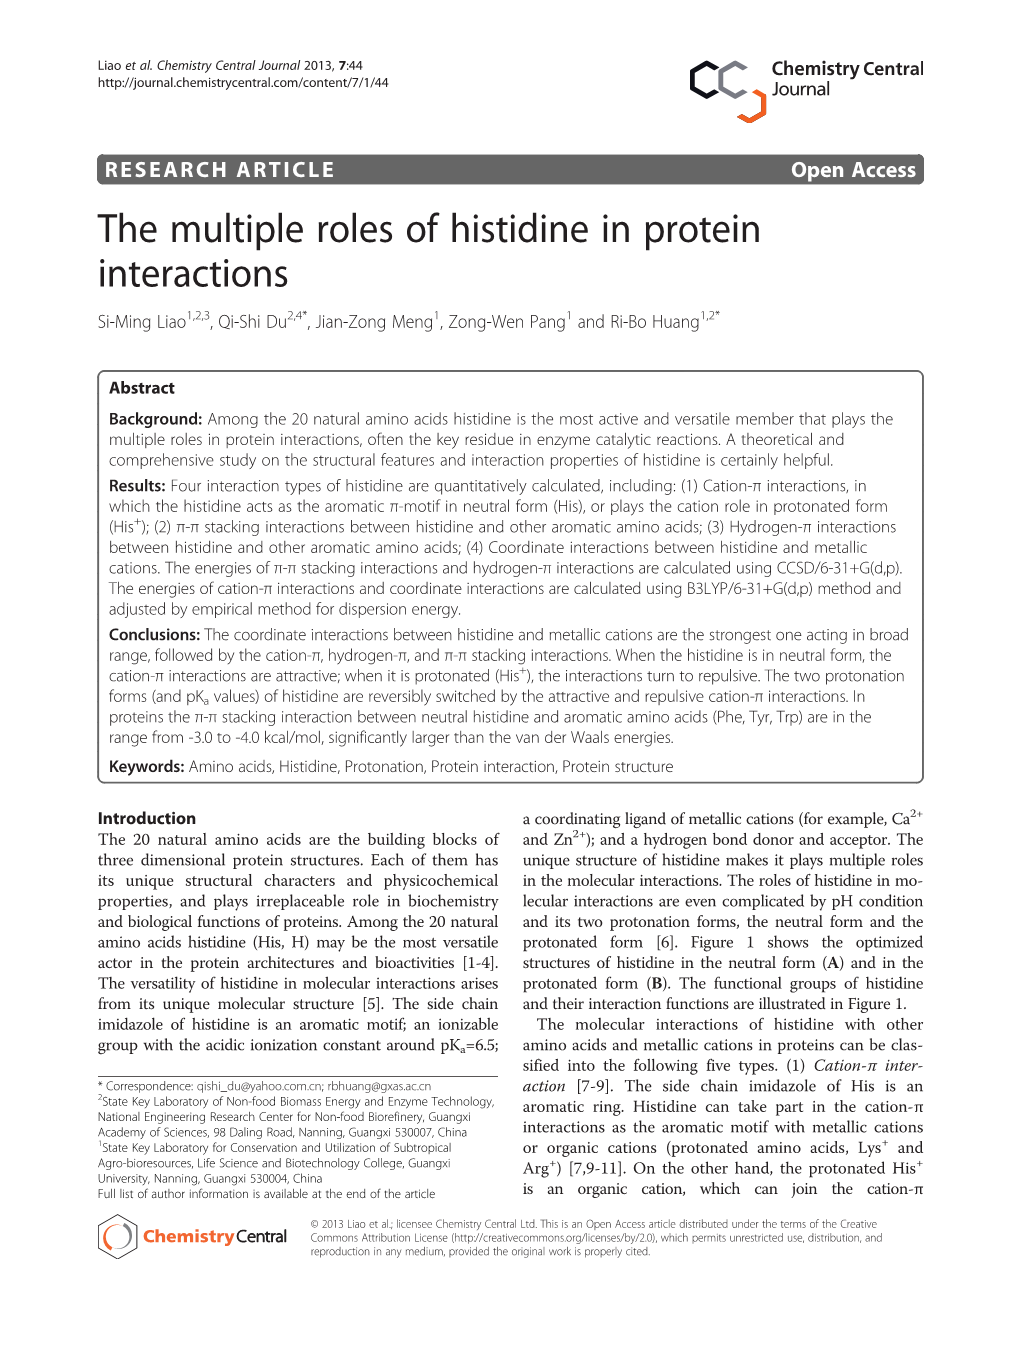 The Multiple Roles of Histidine in Protein Interactions Si-Ming Liao1,2,3, Qi-Shi Du2,4*, Jian-Zong Meng1, Zong-Wen Pang1 and Ri-Bo Huang1,2*